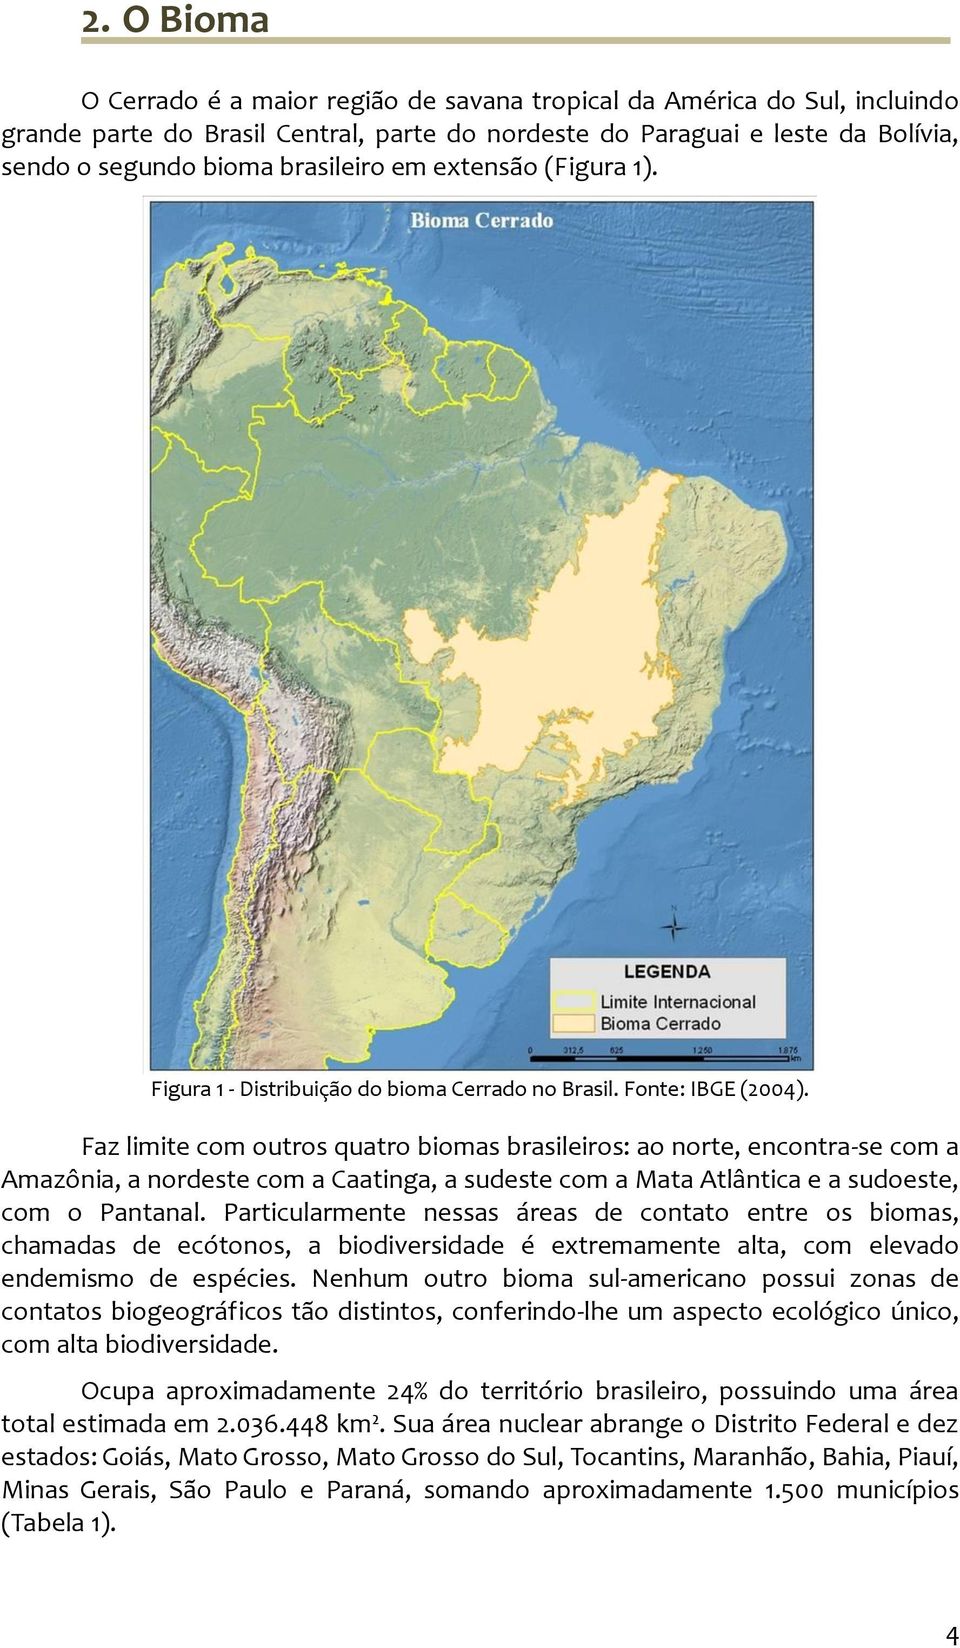 Faz limite com outros quatro biomas brasileiros: ao norte, encontra-se com a Amazônia, a nordeste com a Caatinga, a sudeste com a Mata Atlântica e a sudoeste, com o Pantanal.